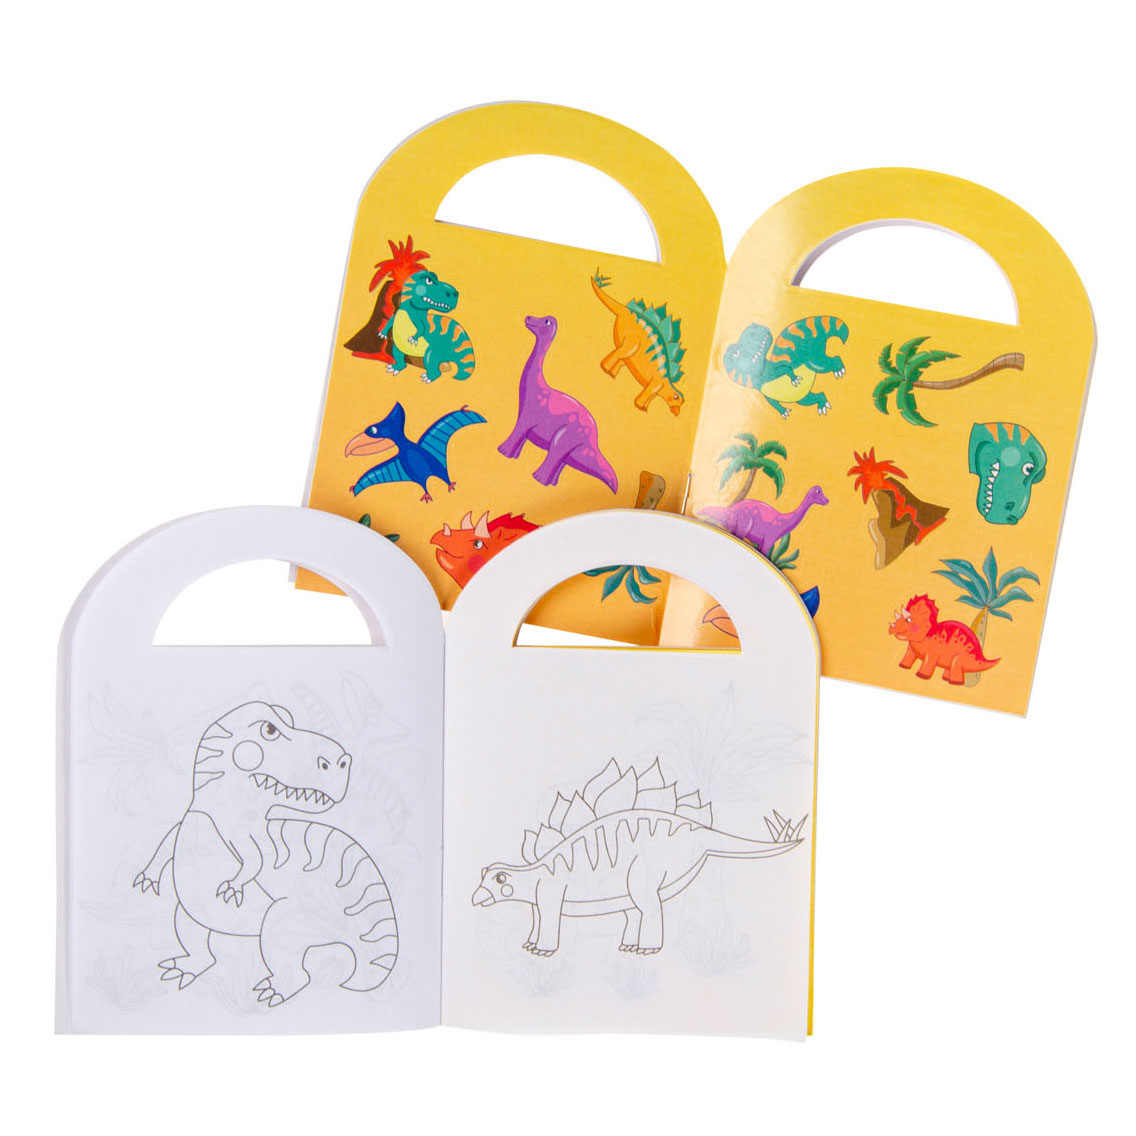 Malbuch mit Dinosaurieraufklebern